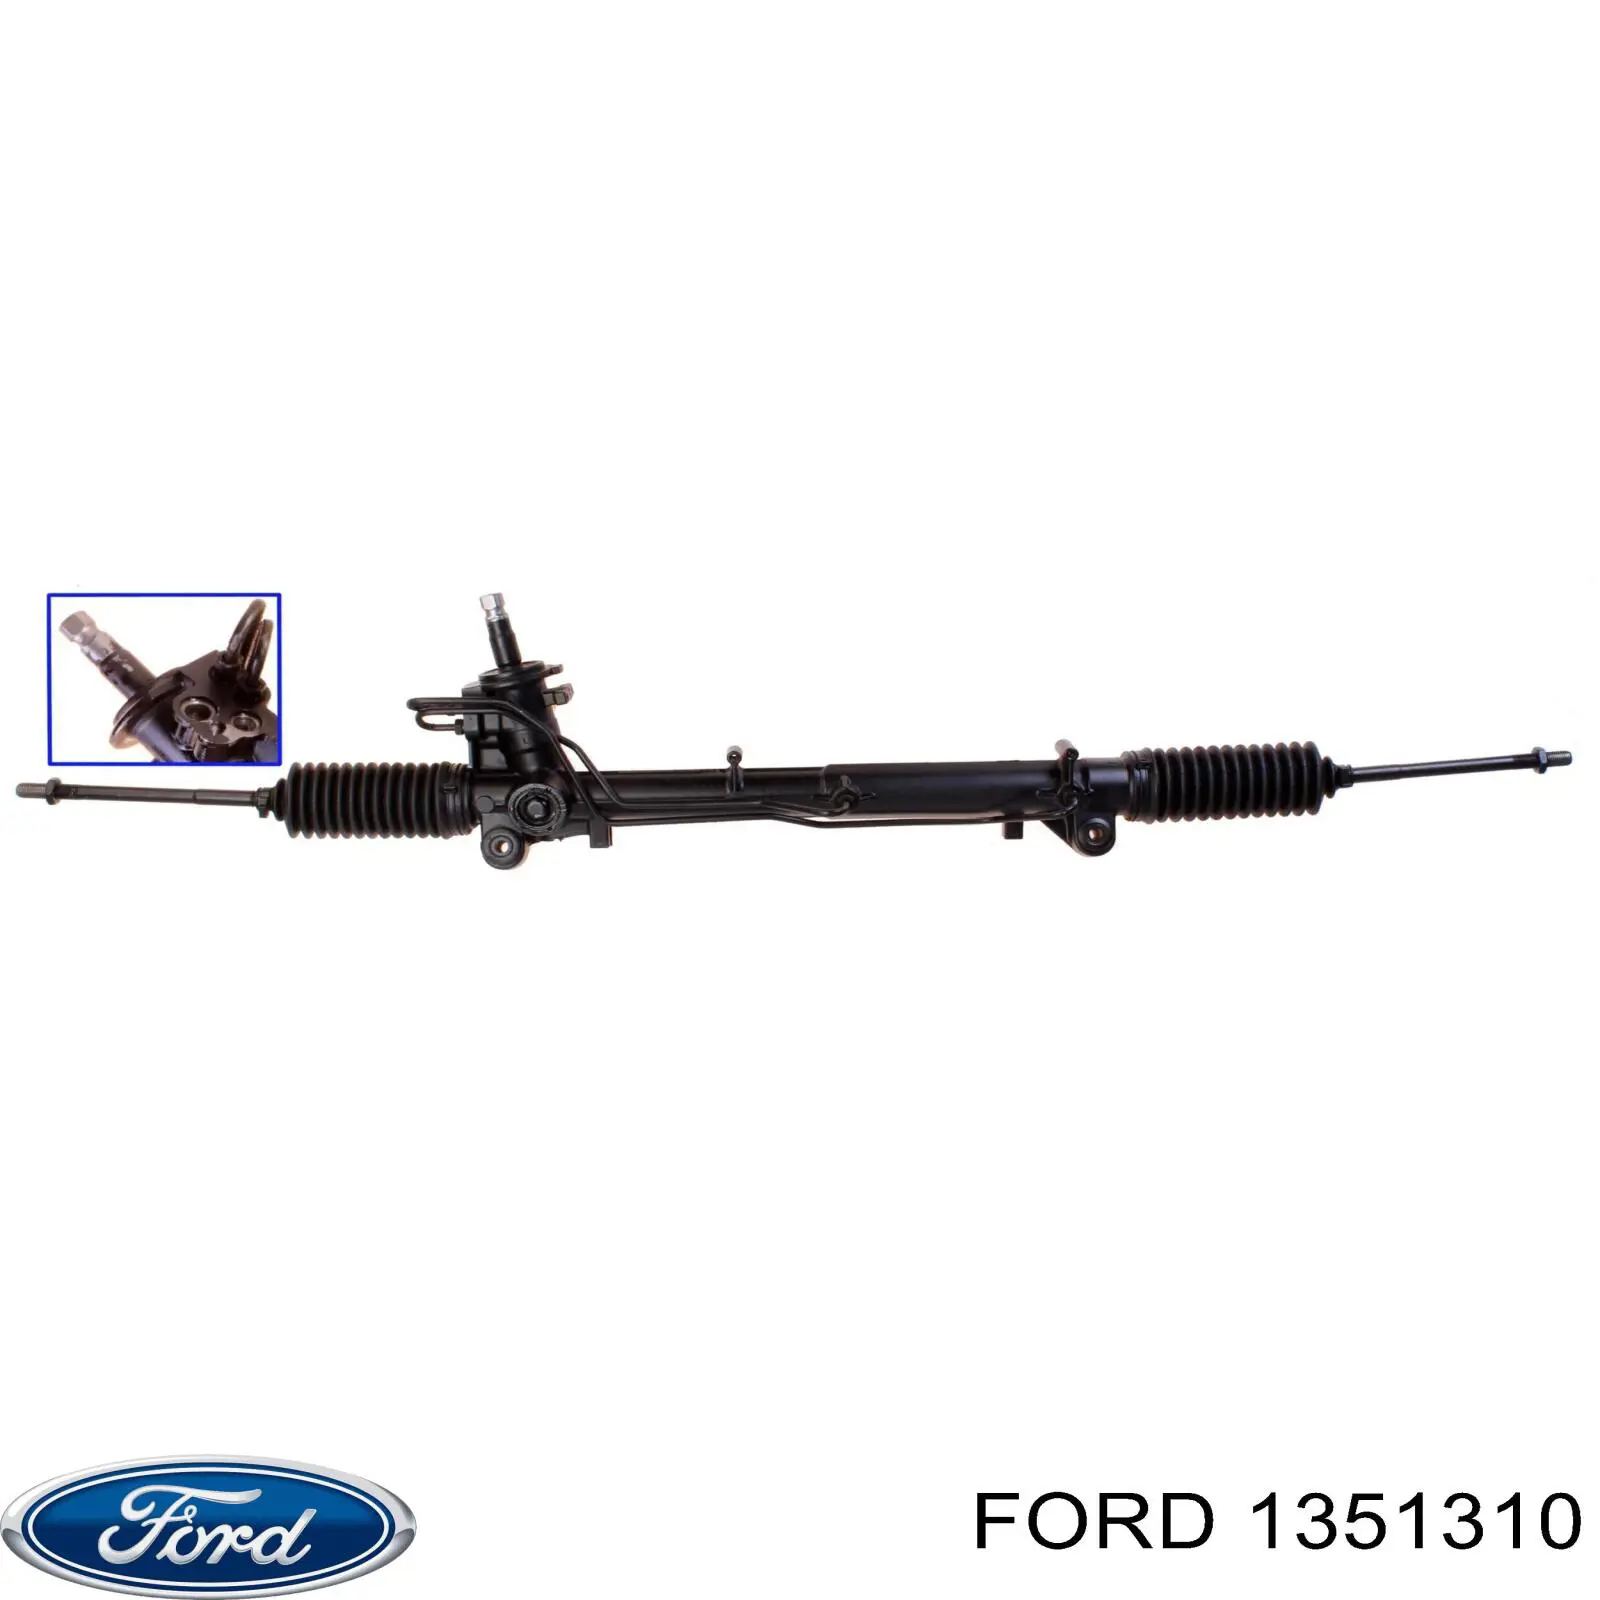 1351310 Ford cremallera de dirección